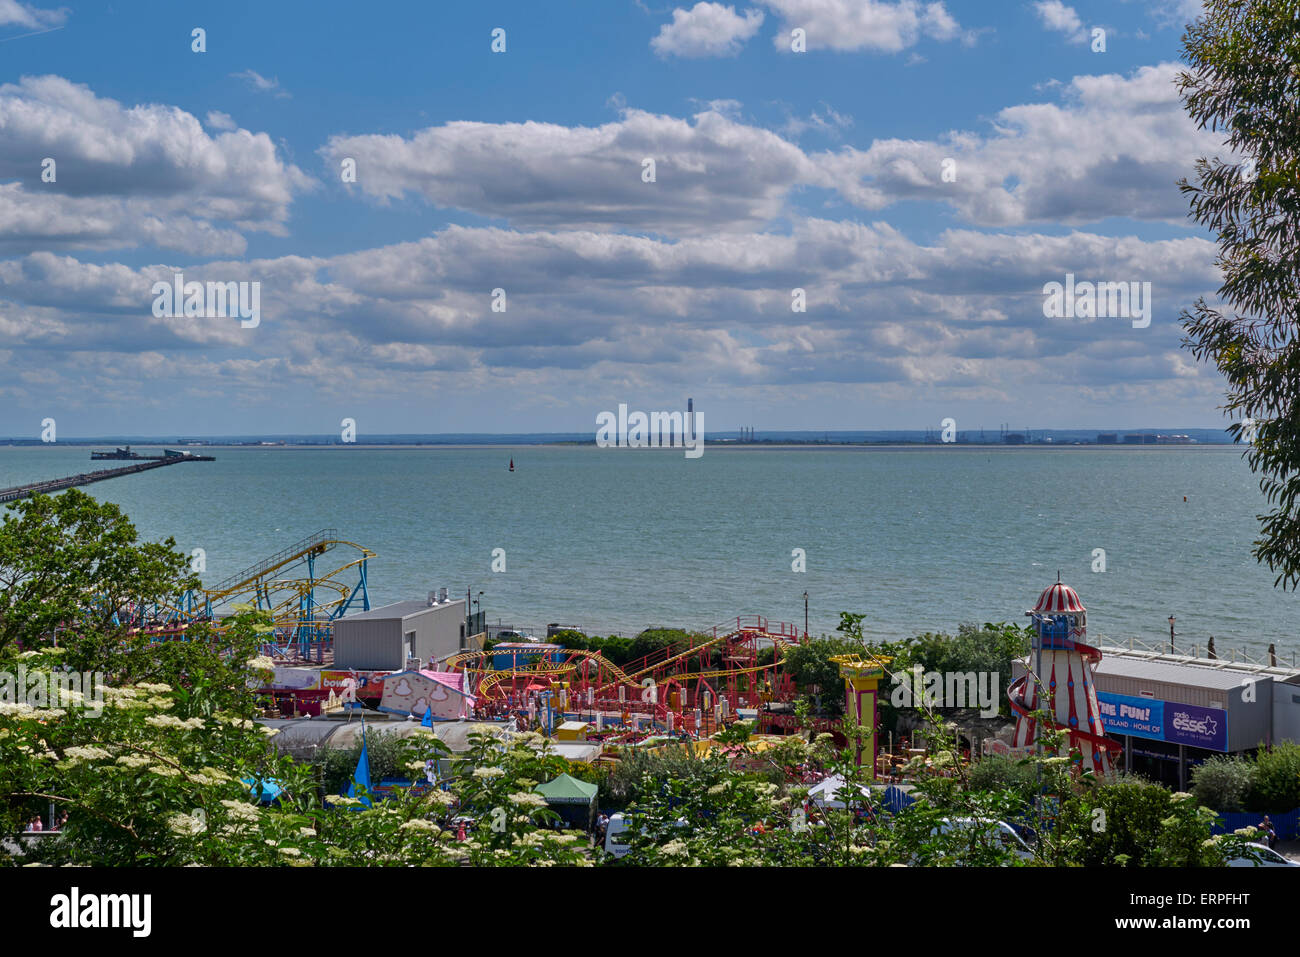 die Veiew von royal Terrasse, mit Blick in Richtung Adventure Island Amusement Park in Southend, Essex, UK Stockfoto